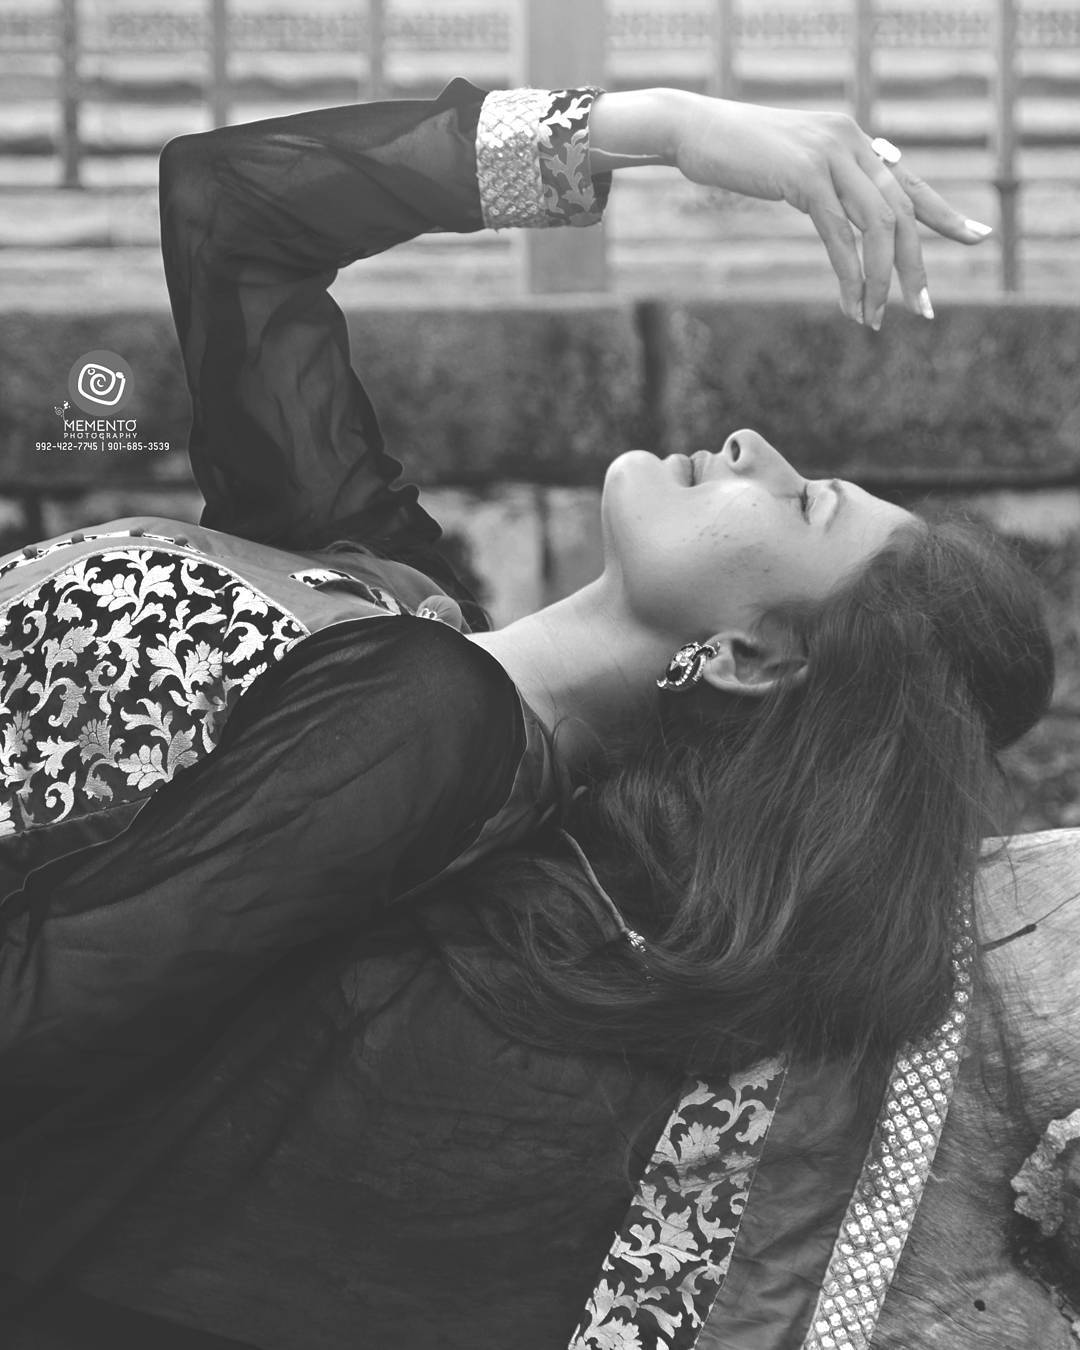 Outdoor Portfolio/catalog shoot / modeling portrait .  #portfolioshoot #womensportrait #catalogshoot #ahmedabadfashion #ahmedabadfashionblogger
 #ahmedabadfashionpalette #printshoot #womensportraiture #beautifulwomen #girlsportrait #photoholic #portfolioshoot  #folioshoot  #girlsfashions  #portraitphotography #portrait
#fashionphotography #FashionShoot #ahmedabad #photography #picoftheday
#modelpose #modelphotography #AhmedabadPhotography
#shootout_ahmedabad #indianfashionblogger #fashionblogger  #ahmedabaddiaries #ahmedabadshoutout #MementoPhotography #9924227745 #dipmementophotography #dip_memento_photography